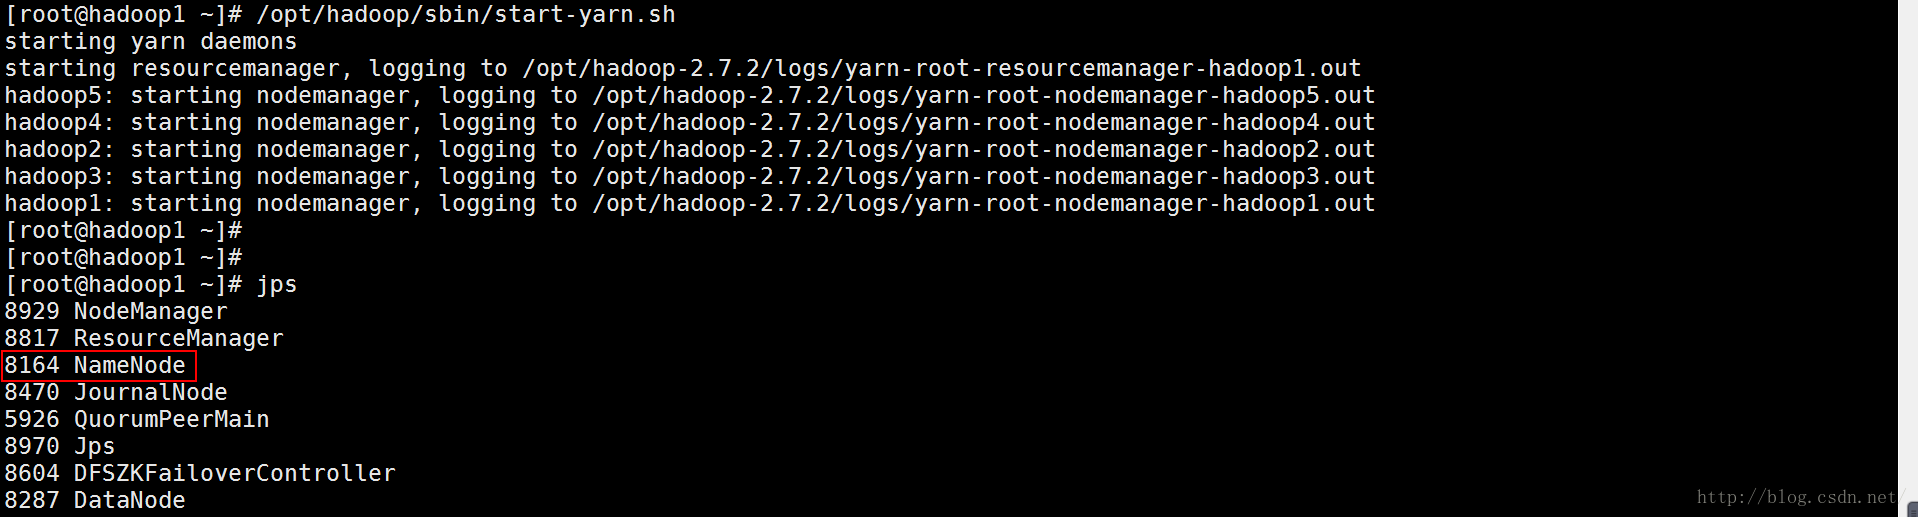 计算机生成了可选文字:|0[root@hadoopl -]# /opt/hadoop/sbin/start-yarn.sh starting starting hadoop5 : hadoop4 : hadoop2 : hadoop3 : hadoopl : yarn daemons resourcemanager, logging to /opt/hadoop-2.7.2/logs/yarn- root- resourcemanager-hadoopl.out starting starting starting starting starting nodemanager , nodemanager , nodemanager , nodemanager , nodemanager , j ps logging logging logging logging logging to to to to to /opt/hadoop /opt/hadoop /opt/hadoop /opt/hadoop /opt/hadoop 7 . 2/ logs/ ya rn - root - nodemanager - hadoop5. out 7 . 2/ logs/ ya rn - root - nodemanager - hadoop4. out 7 . 2/ logs/ yarn - root - nodemanager - hadoop2 . out 7 . 2/ logs/ ya rn - root - nodemanager - hadoop3. out 7 . 2/ logs/ ya rn - root - nodemanager - hadoopl . out [ root@hadoopl [ root@hadoopl [ root@hadoopl 8929 8817 8164 8470 5926 8970 8604 8287 NodeManage r Resou rceManage r NameNode Jou rnalNode QuorumPee rMain JPS DFSZKFailoverCont roller DataNode